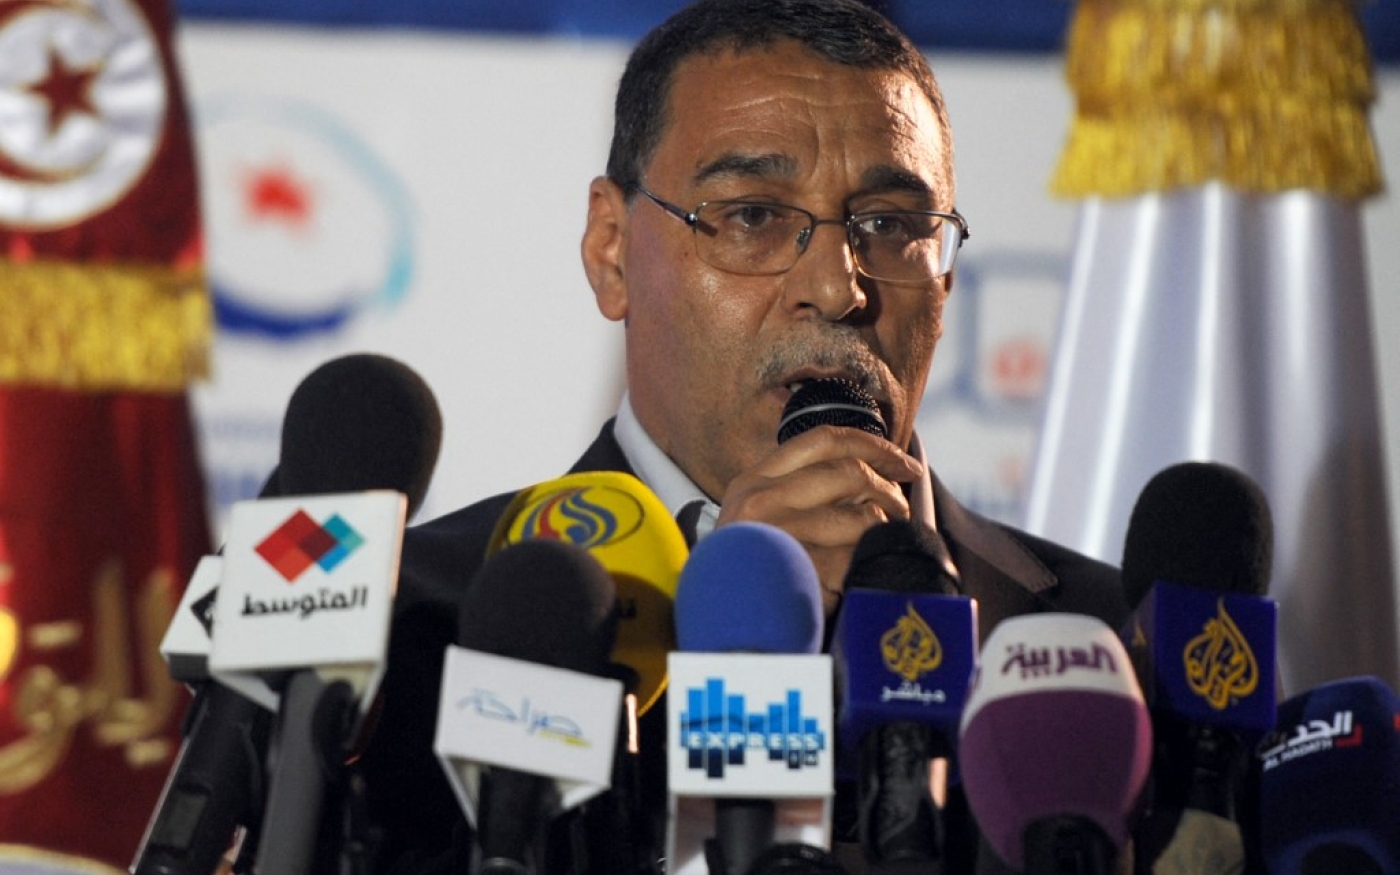 Sept agents de la police ont fouillé la maison de l’ex-dirigeant du mouvement Ennahdha, Abdelhamid Jelassi et ont confisqué son téléphone portable avant de l’arrêter, selon le parti (AFP/Fethi Belaid)